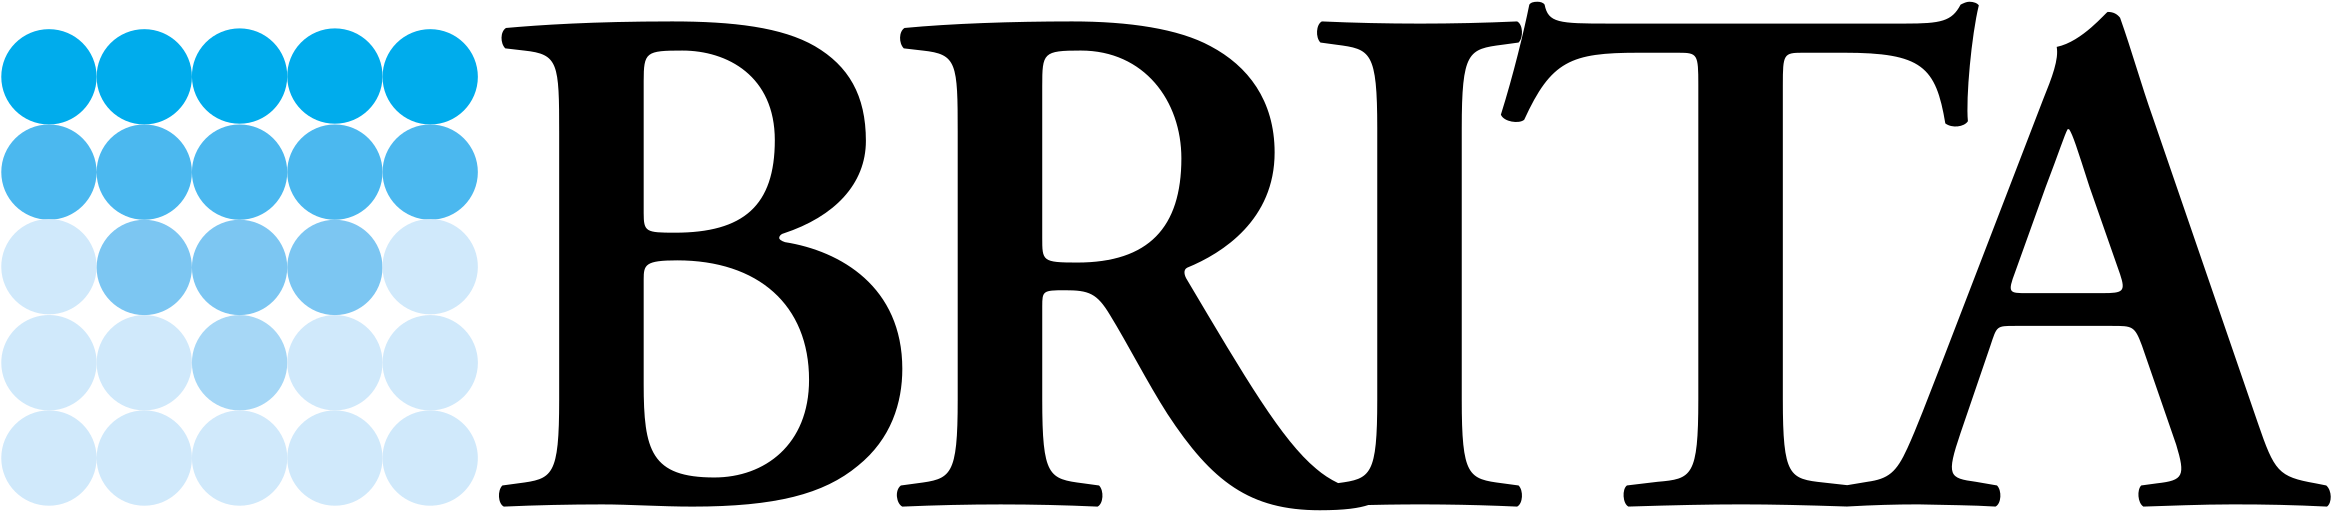 Brita 6997 Logo Png Transparent - Brita Gmbh Clipart (2400x2400), Png Download